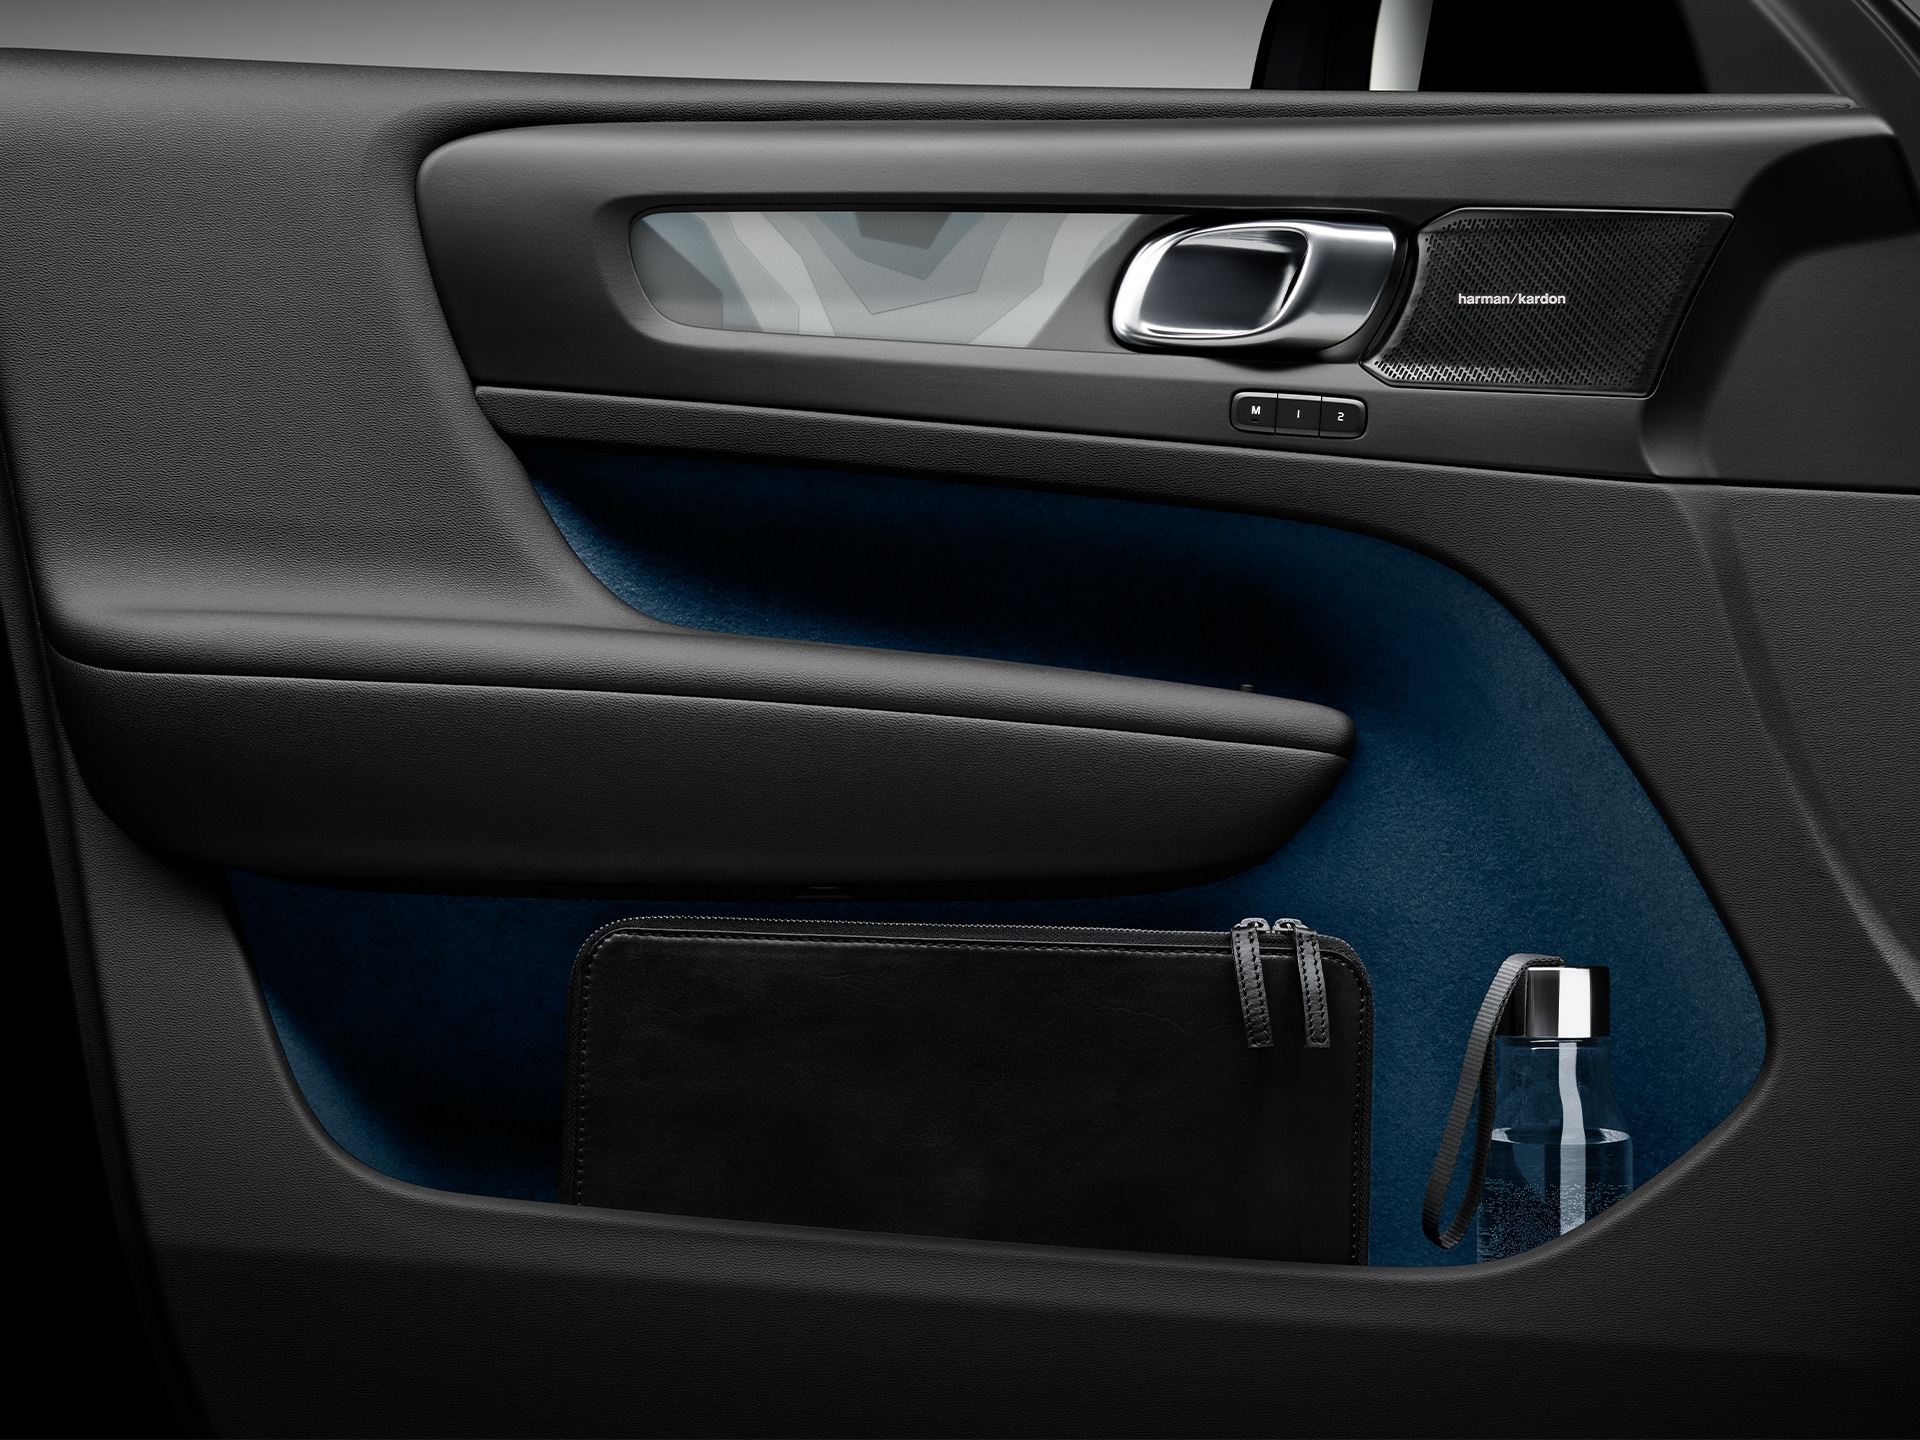 Smarte interiøropbevaringsløsninger i en Volvo C40 Recharge.